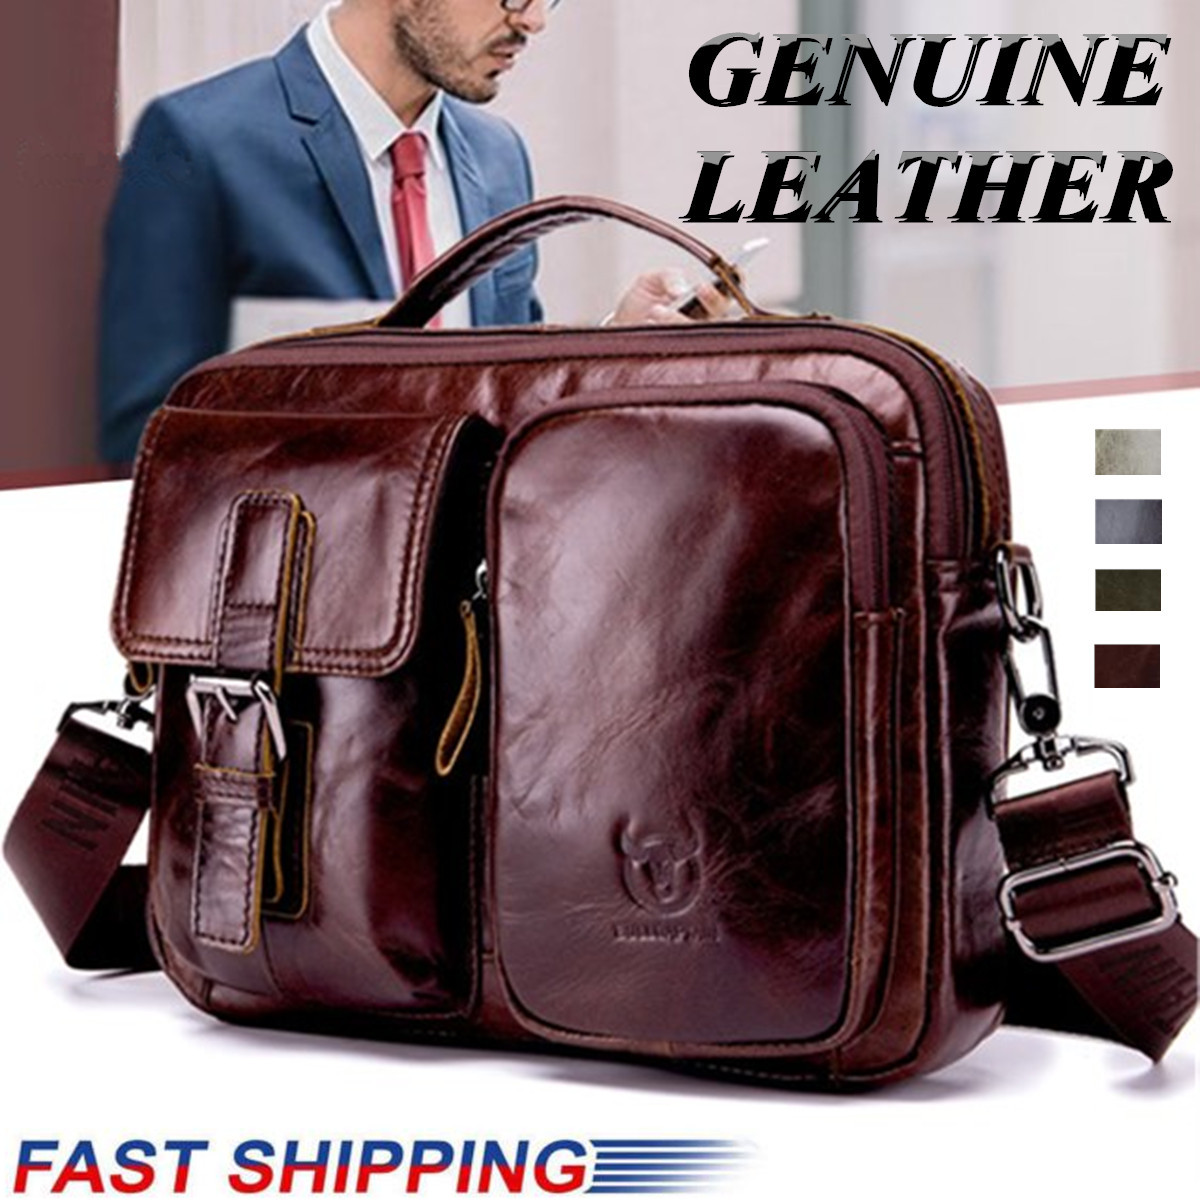 Men-Genuine-Leather-Briefcase-Shoulder-Bag-Business-Travel-Messenger-Crossbody-Laptop-Handbag-1507223-1